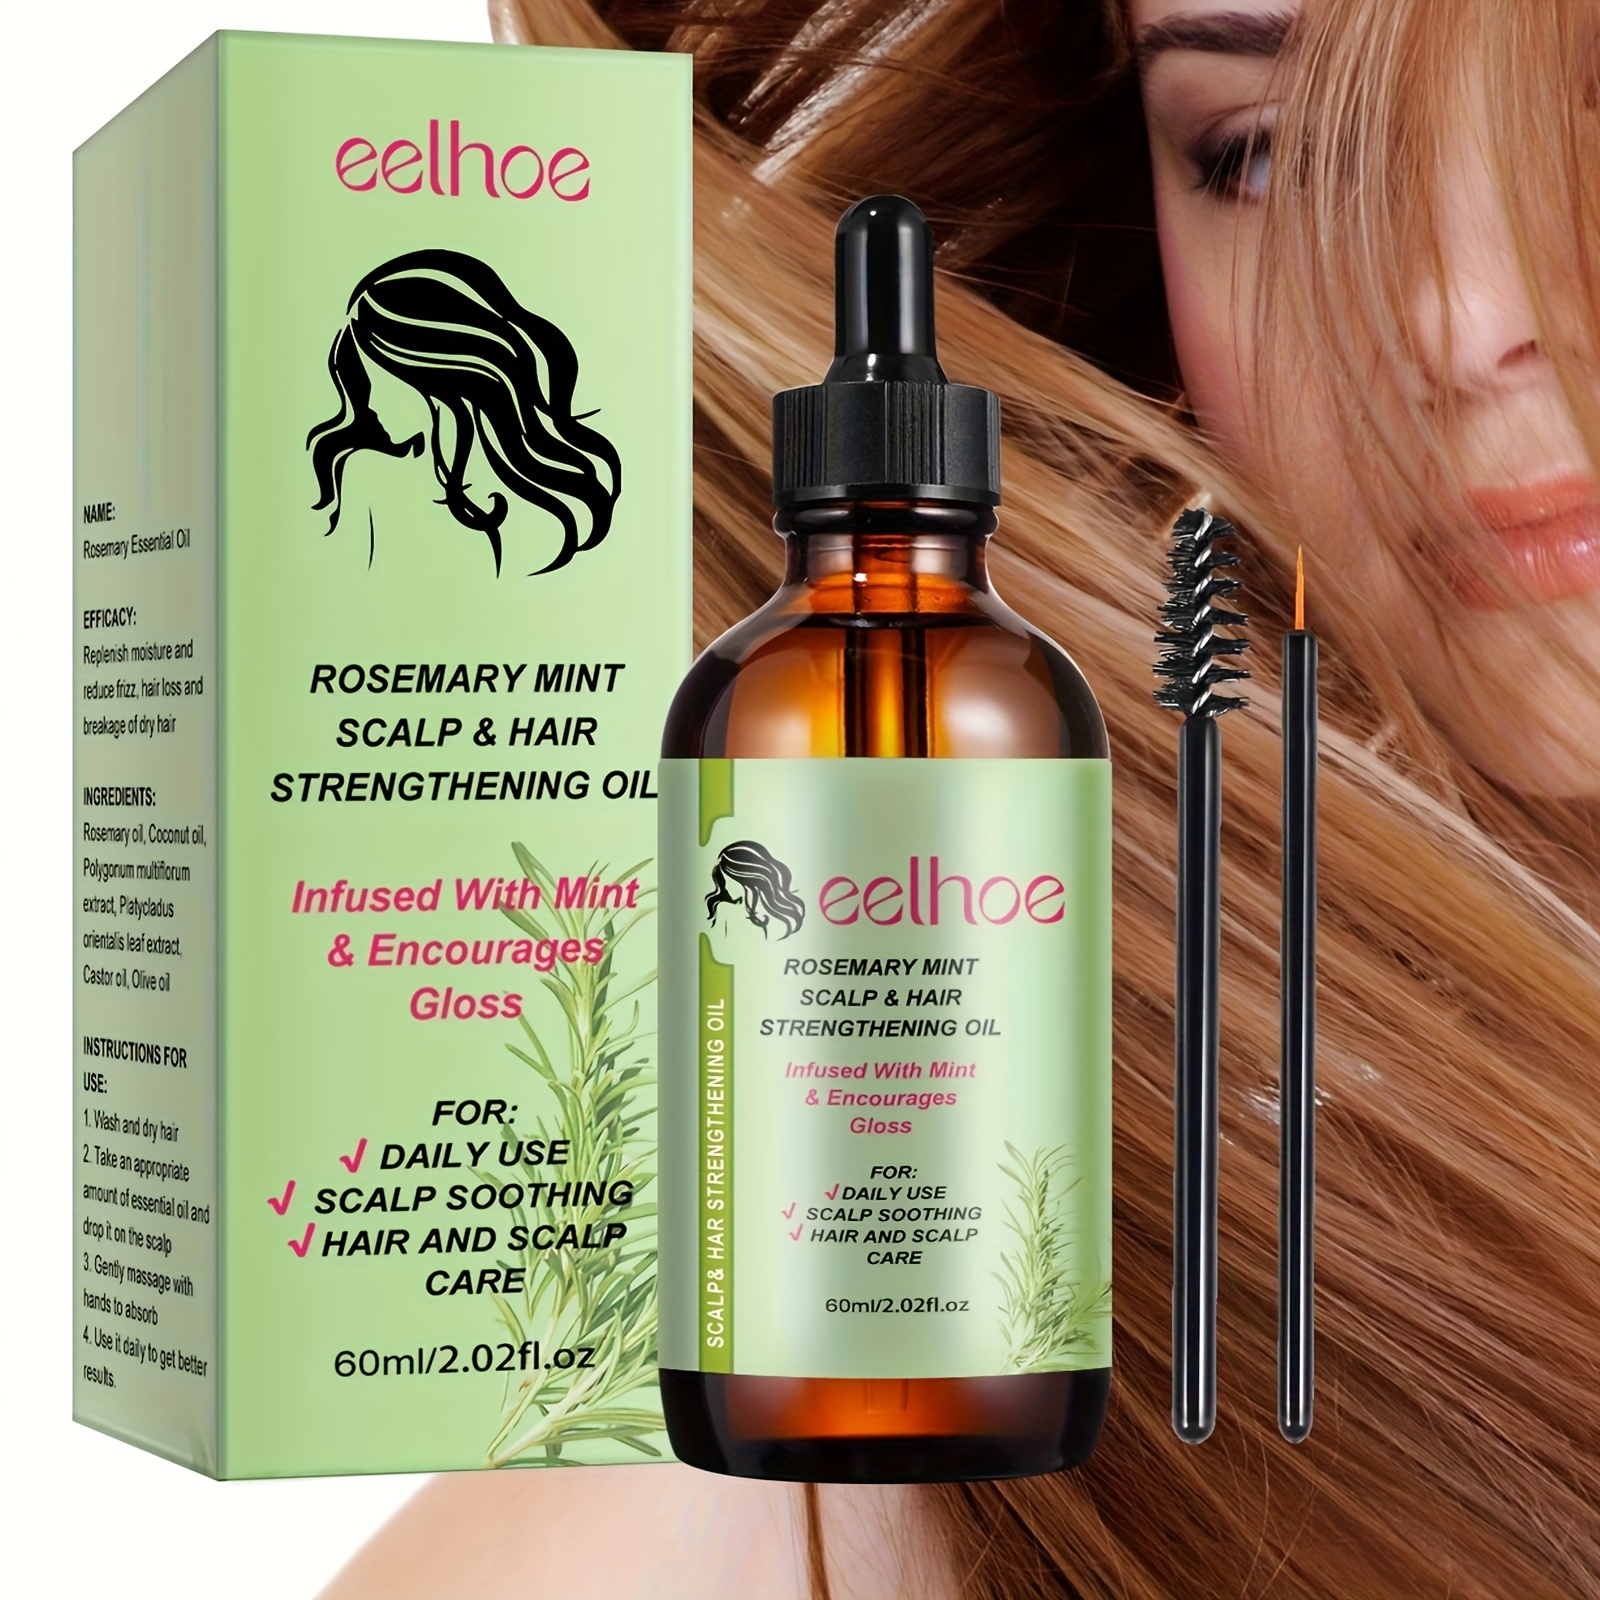 Mielle Organics-aceite para mejorar el cuero cabelludo y el